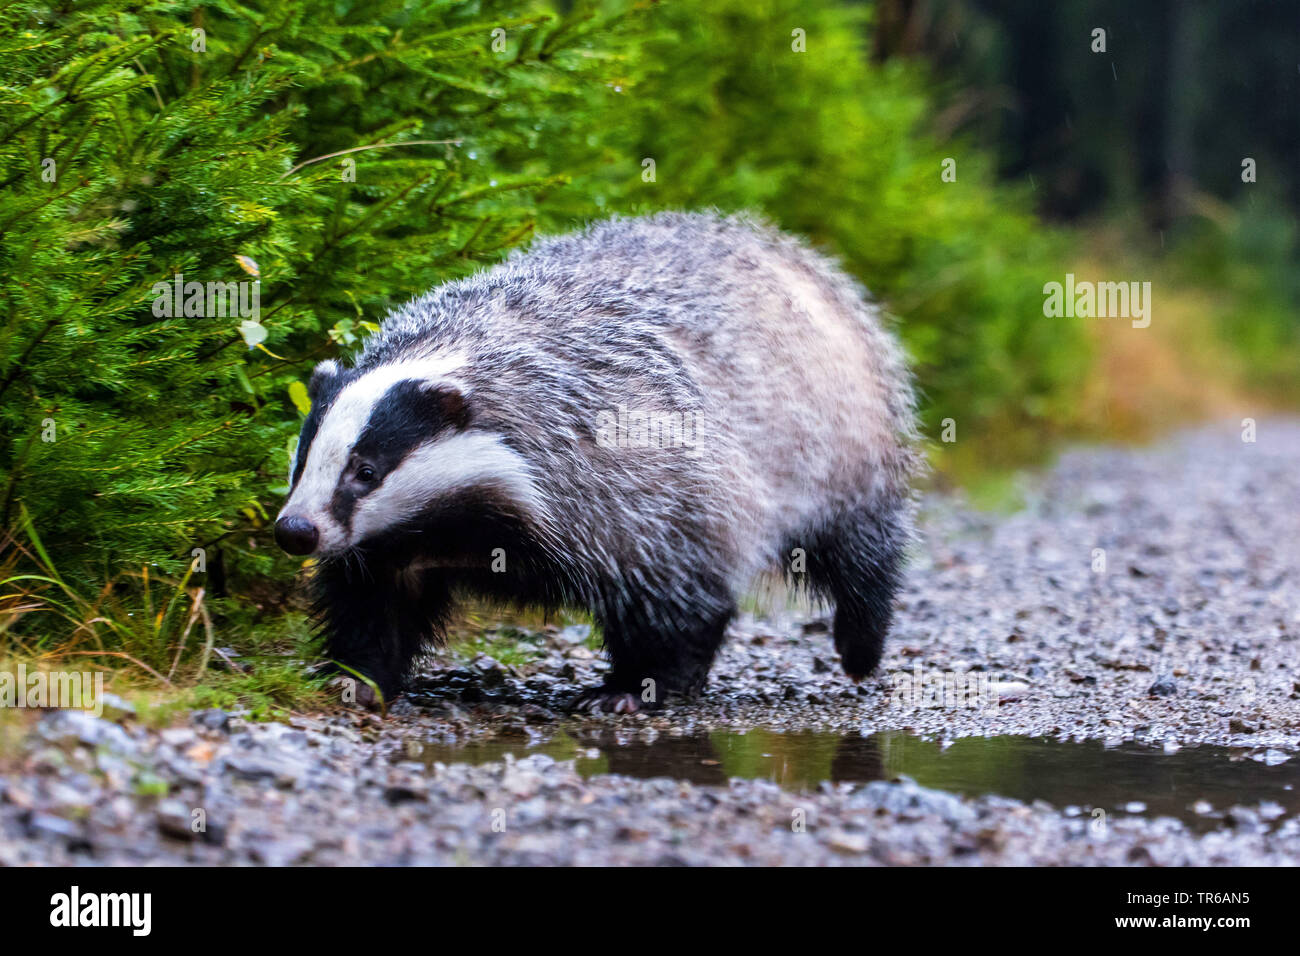 Old World badger, Eurasian badger (Meles meles), running on a forest path, Czech Republic, Hlinsko Stock Photo